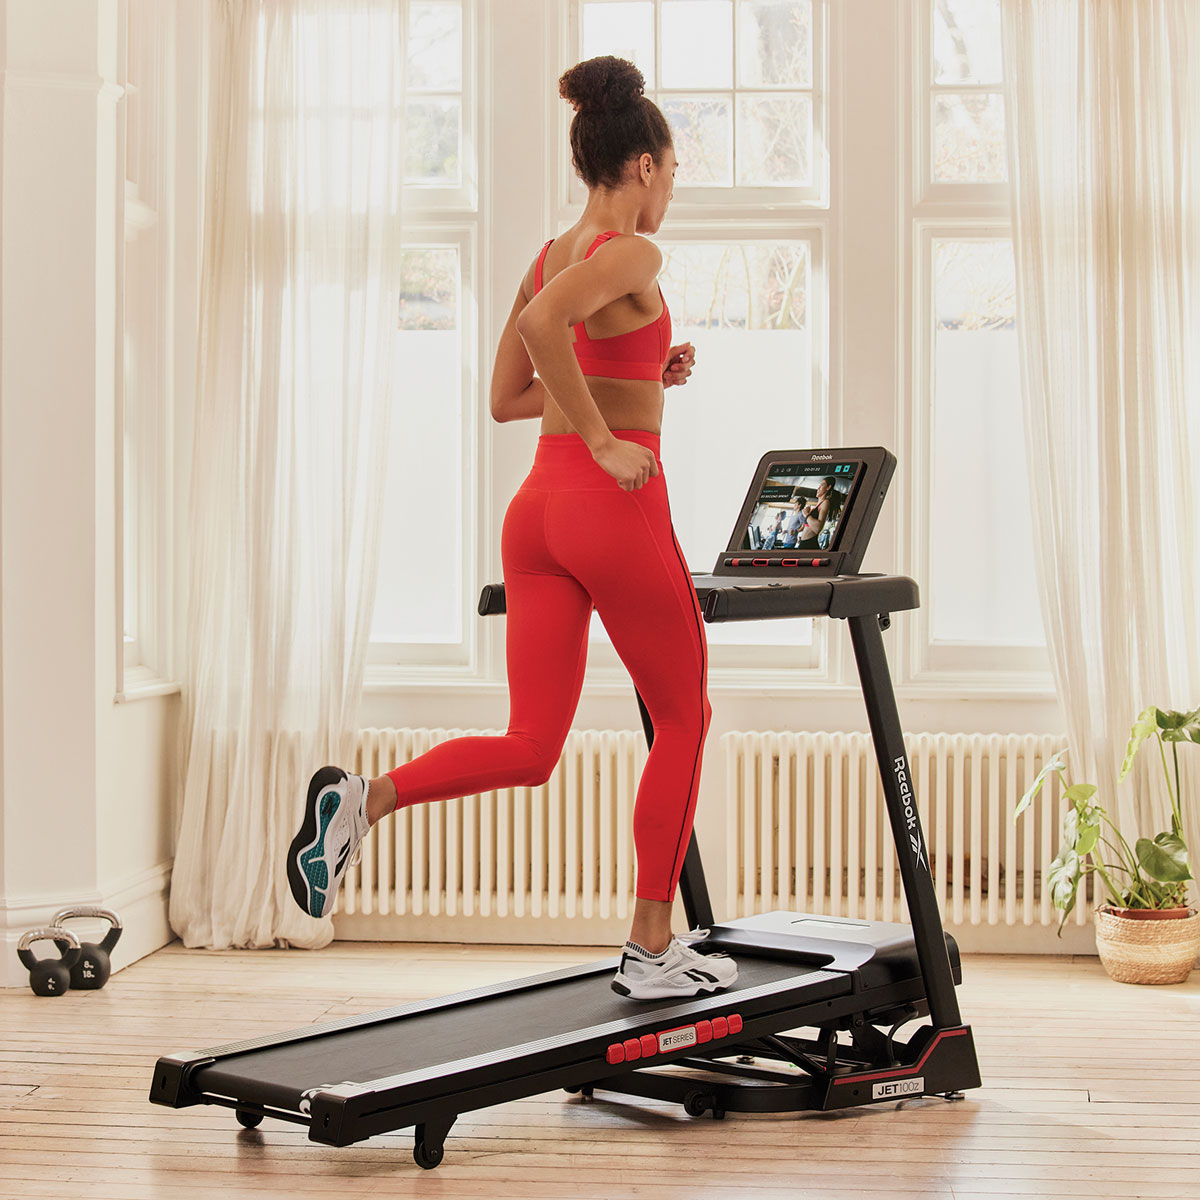 Sports & Fitness > Fitness Accessories - Reebok Jet 100z Treadmill